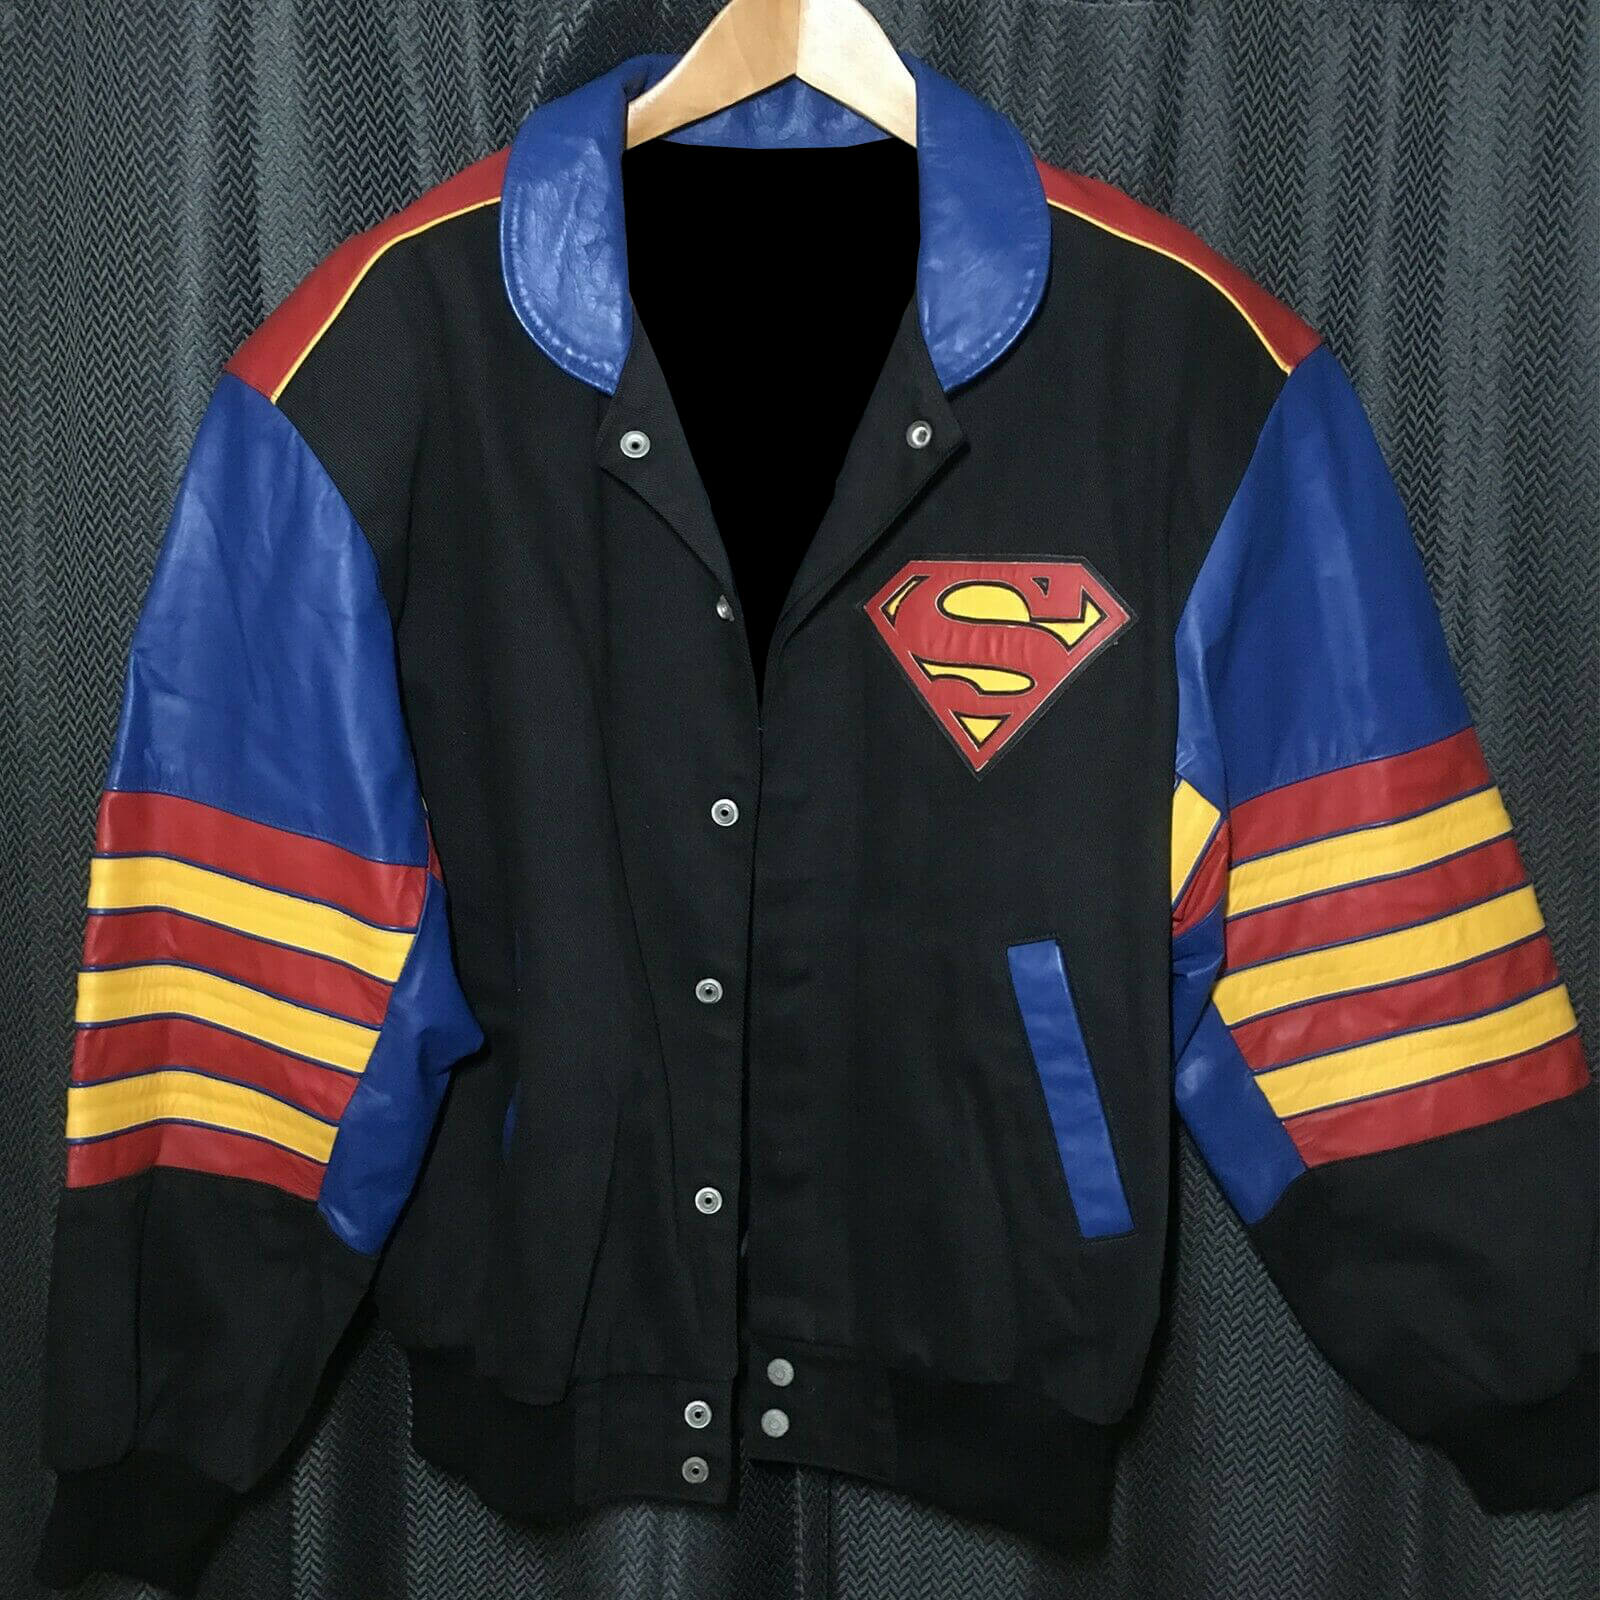 Vintage Jeff Hamilton Design Superman Jacket - Maker of Jacket